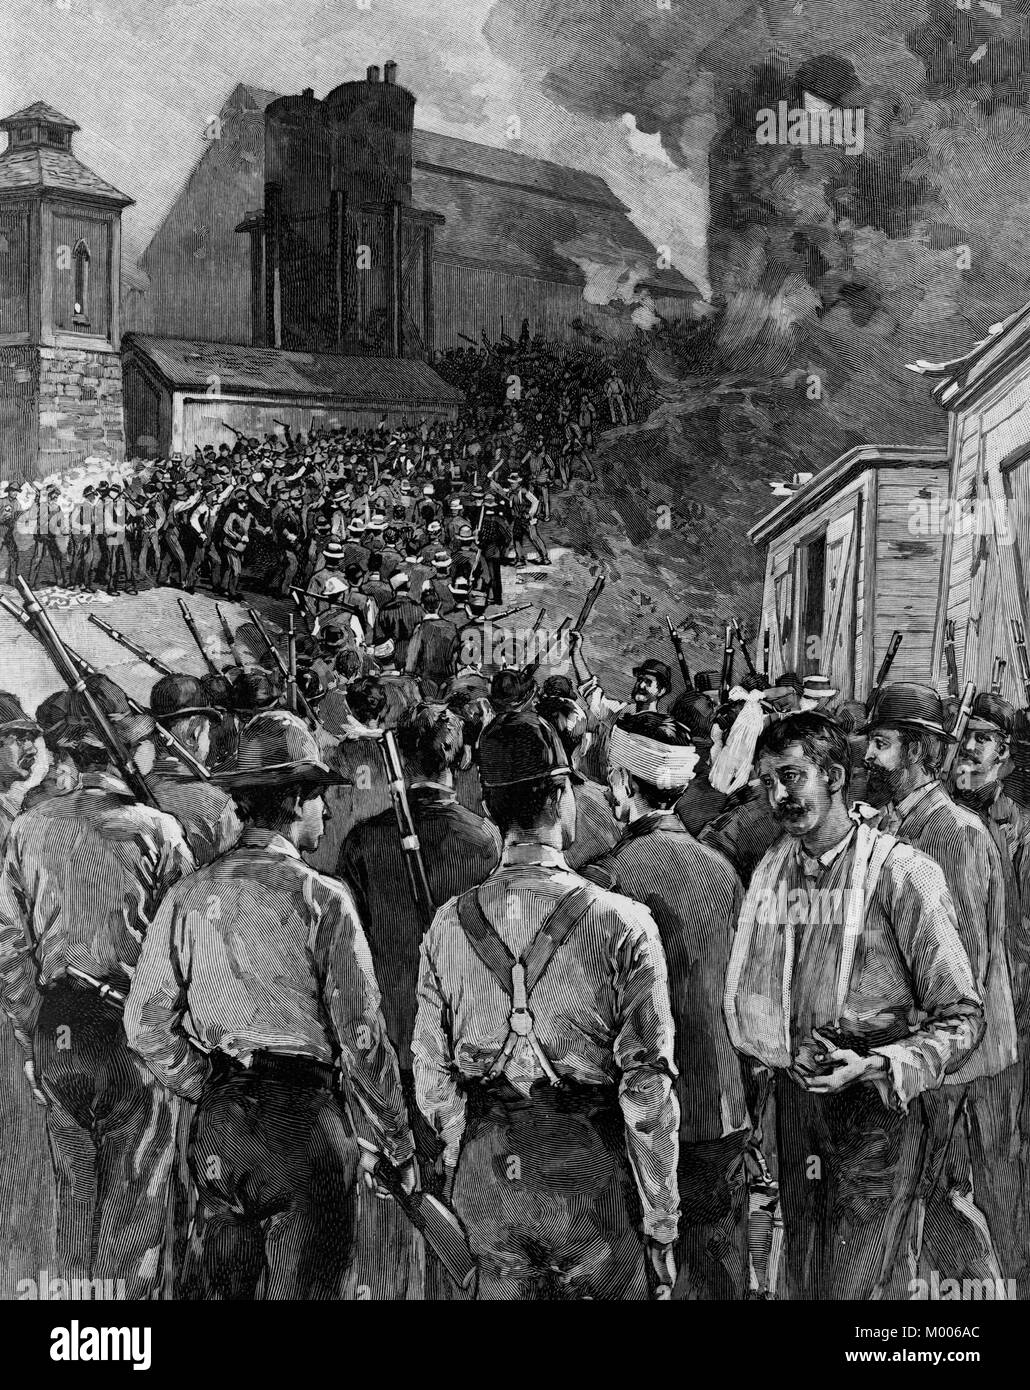 L'agence de détectives Pinkerton hommes sortir les chalands après la capitulation de grévistes lors de la grève de Homestead. Juillet 1892 Banque D'Images